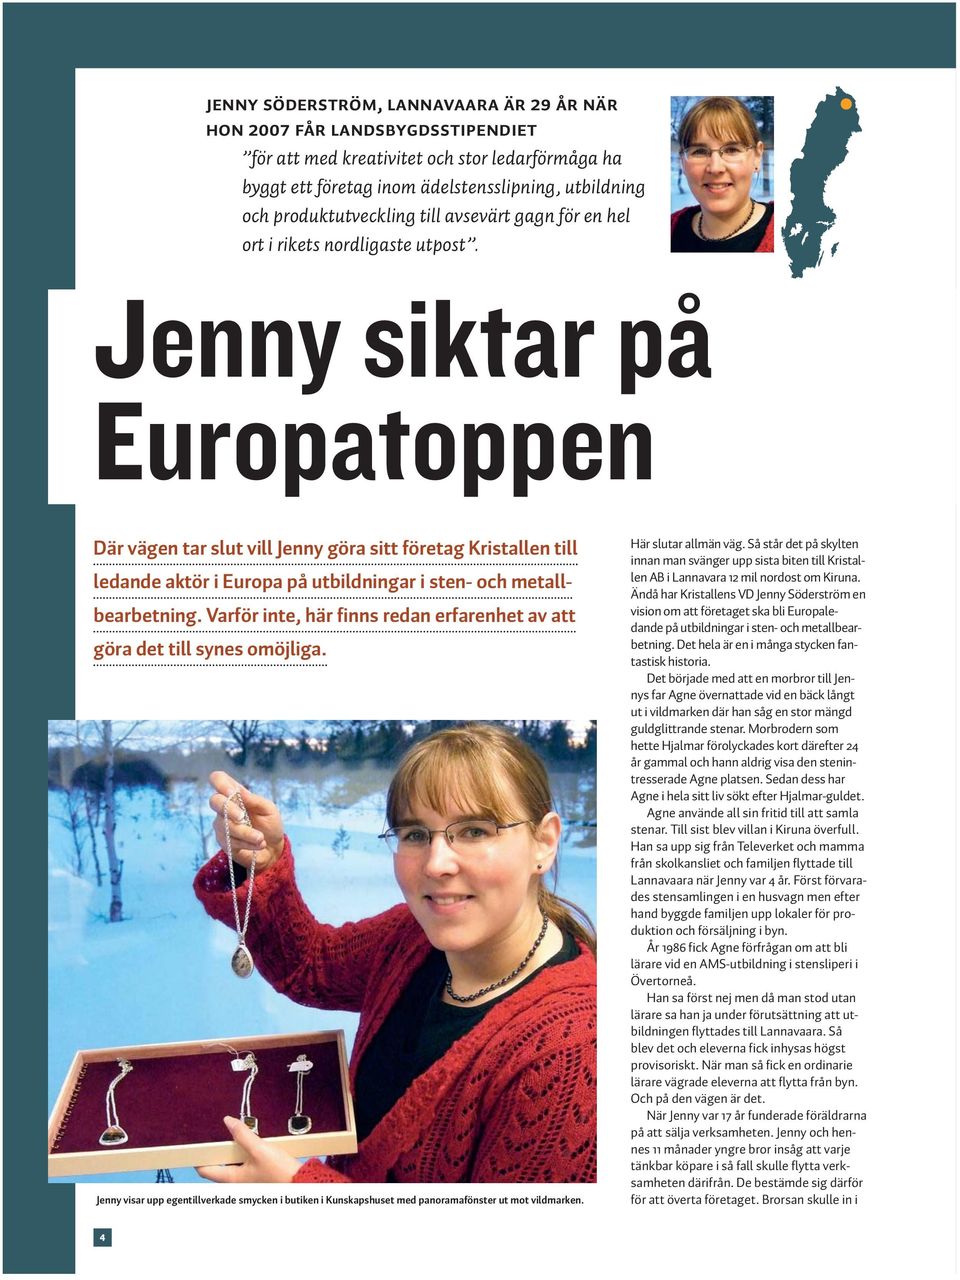 Jenny siktar på Europatoppen Där vägen tar slut vill Jenny göra sitt företag Kristallen till ledande aktör i Europa på utbildningar i sten- och metallbearbetning.